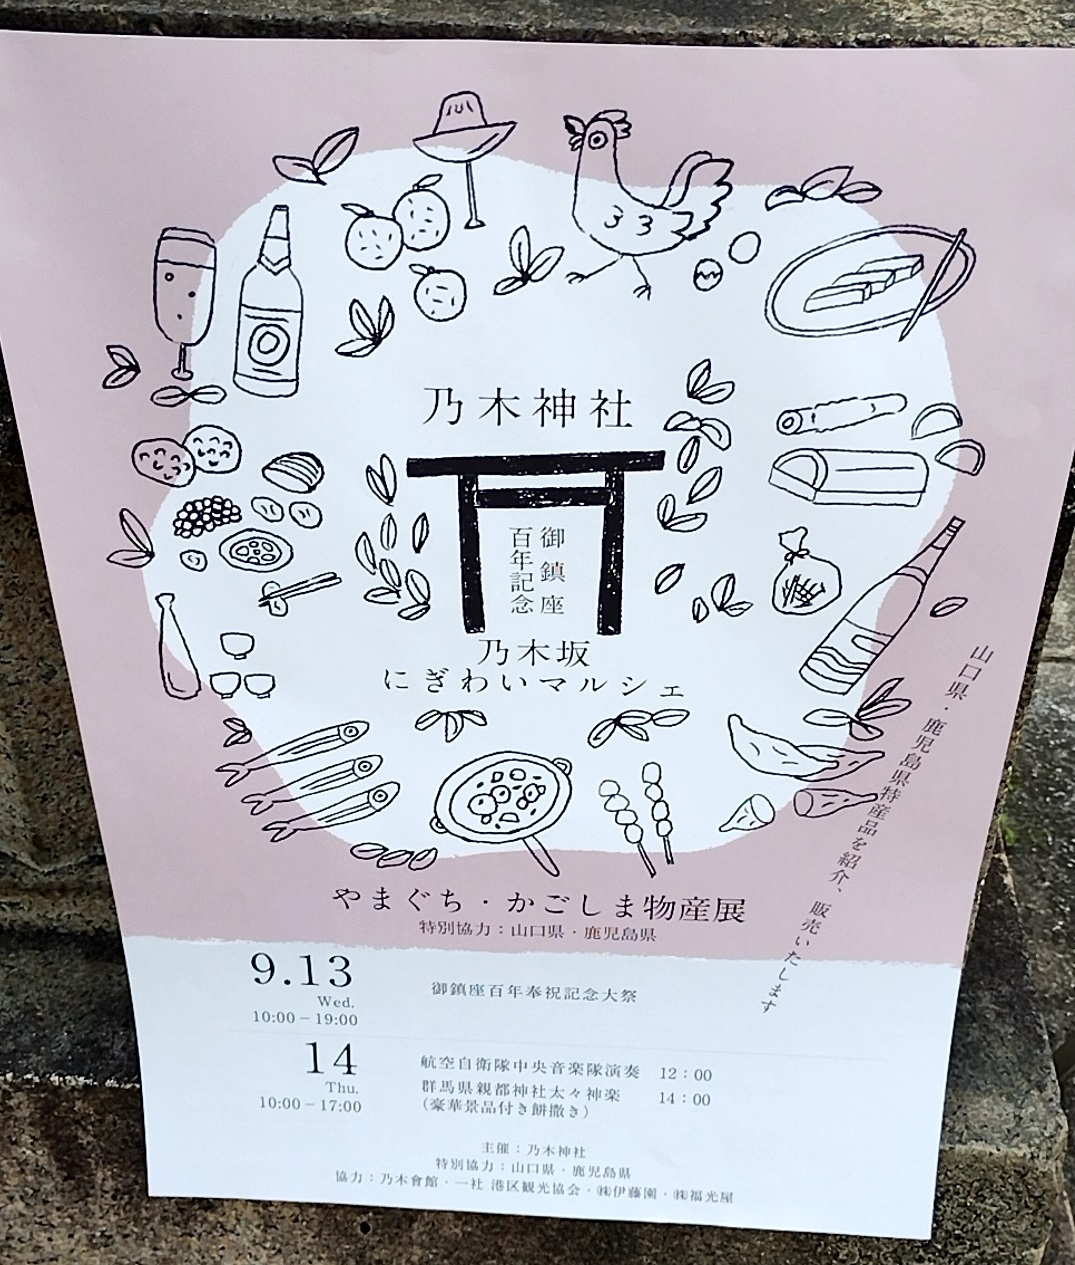 乃木神社で行われていた物産展のポスター